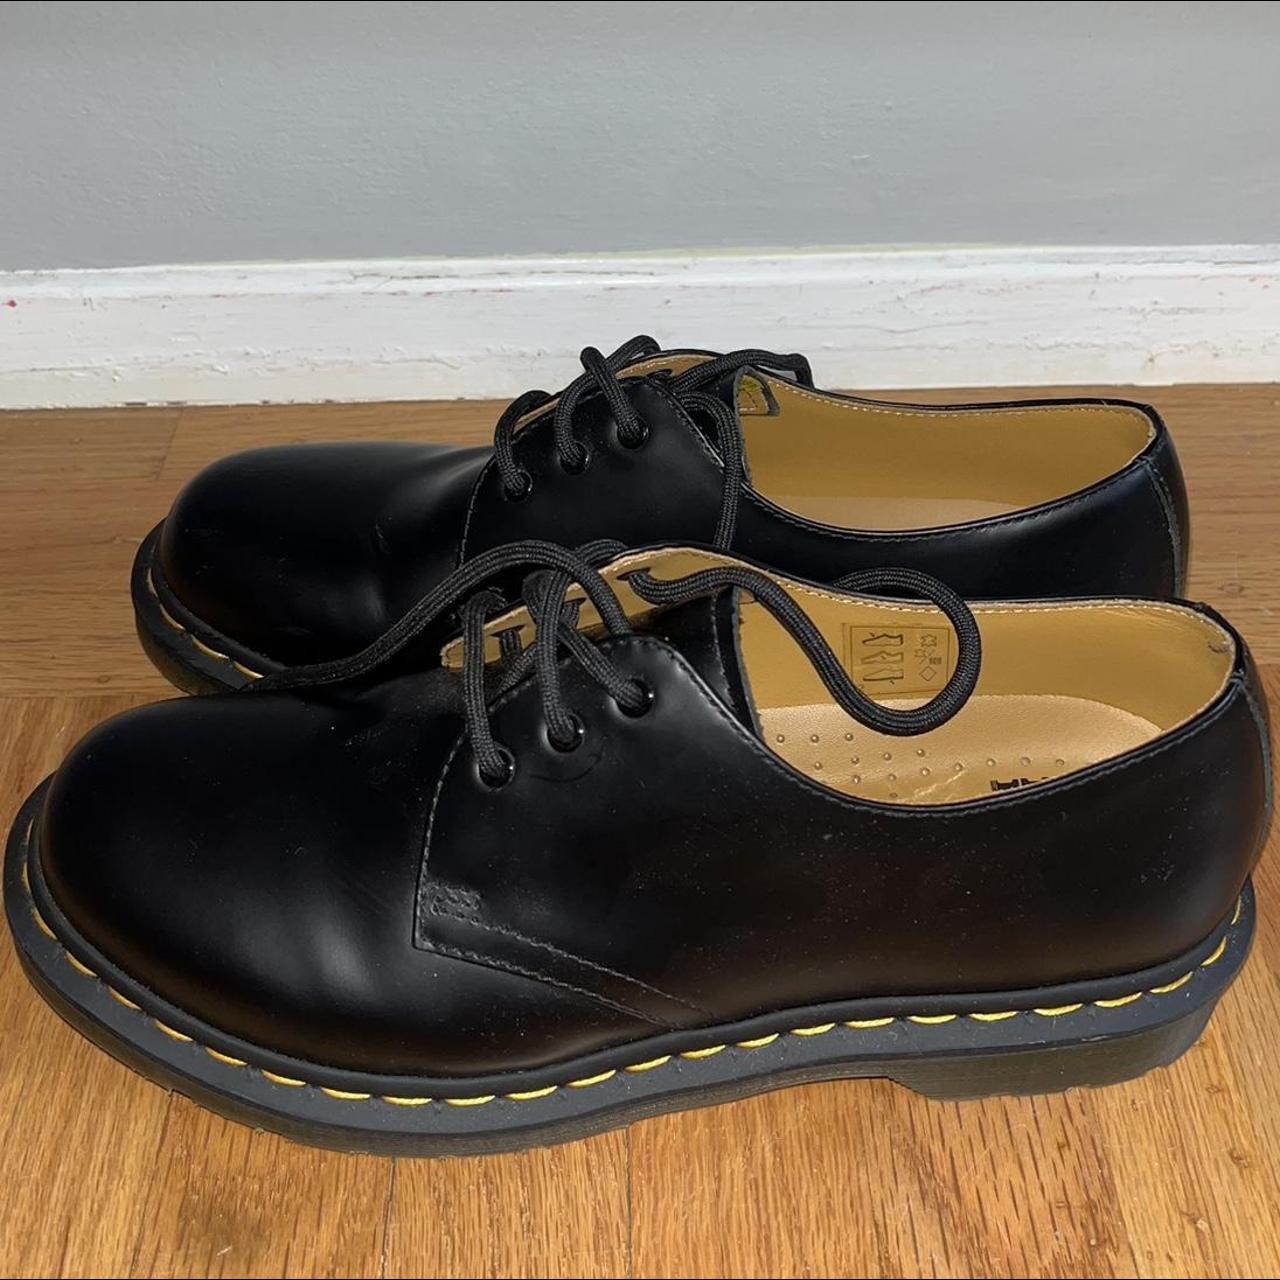 Dr. Martens Women's 1641 Oxford shoes size 8 -... - Depop